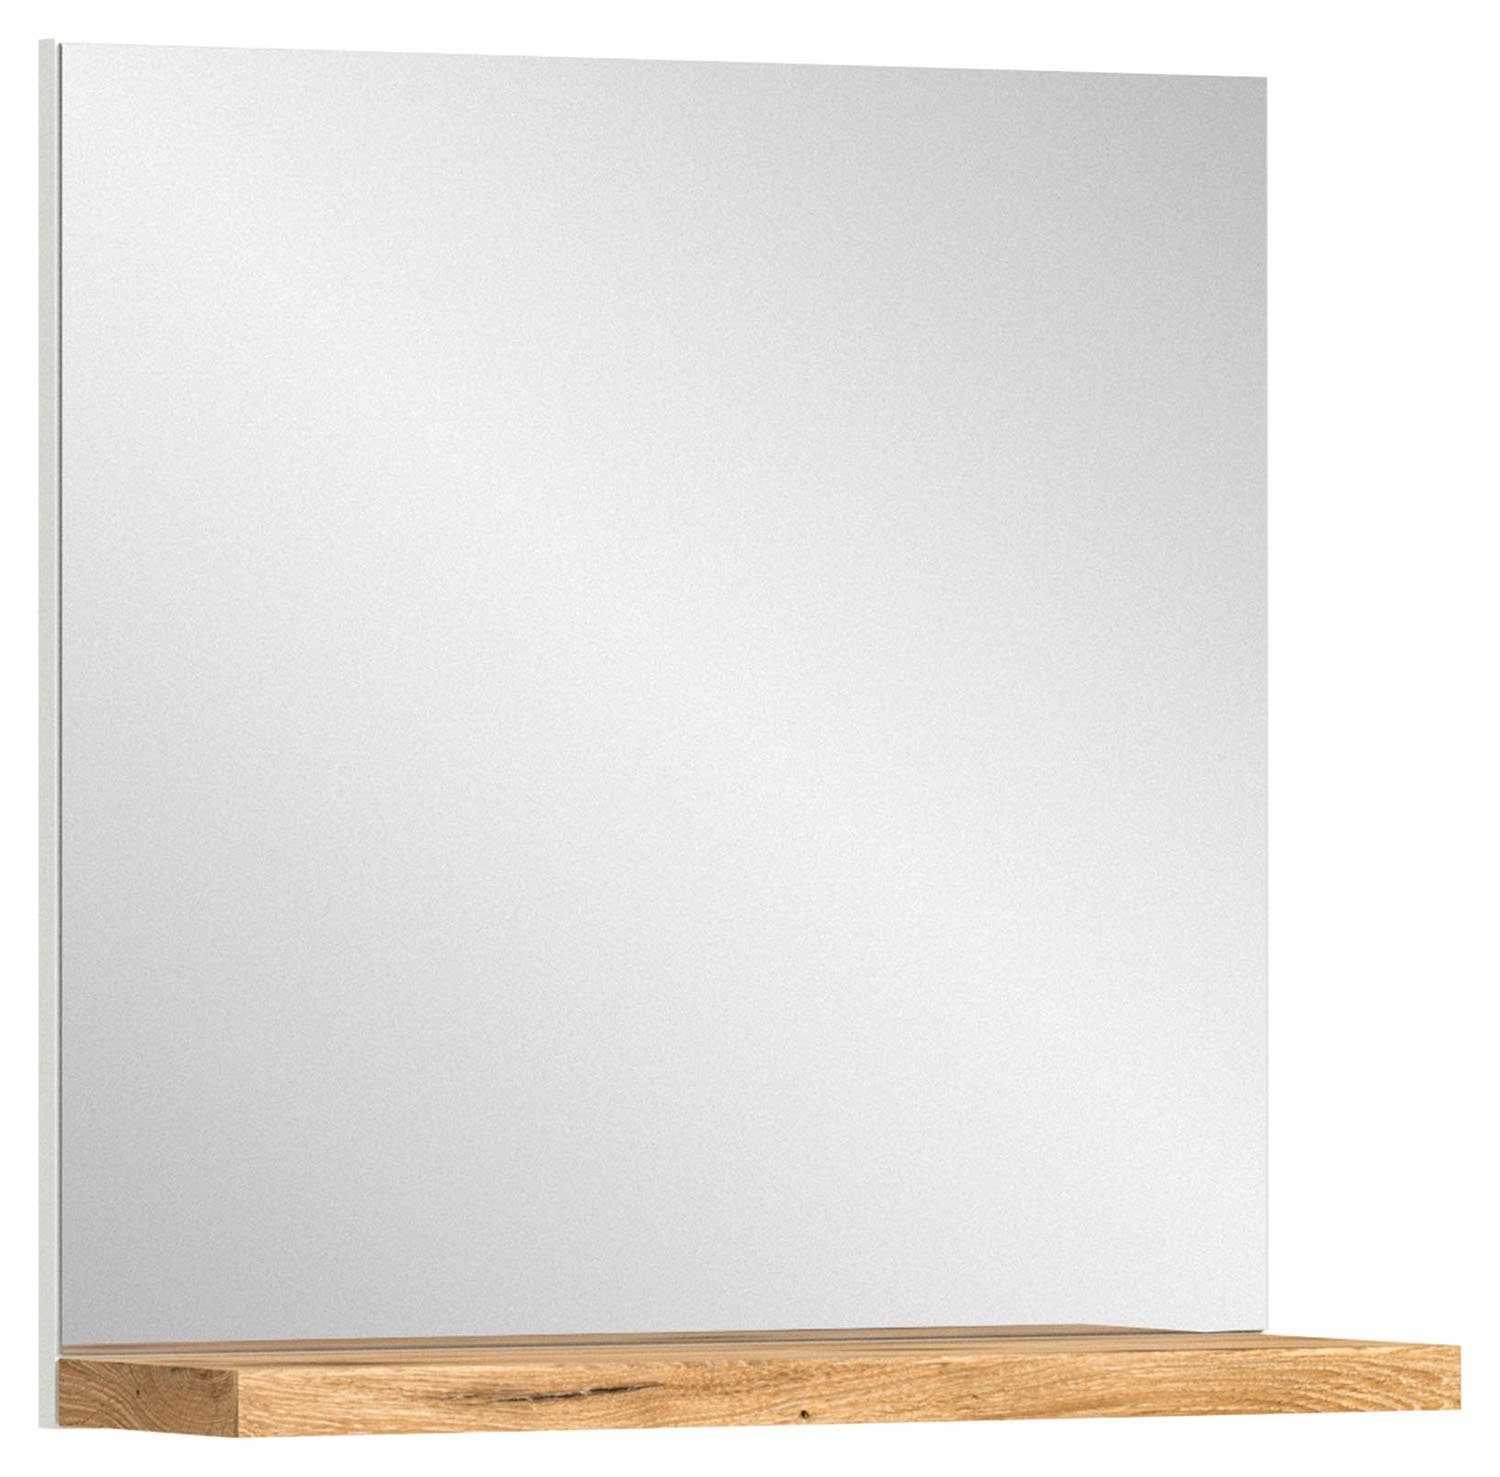 xonox.home Garderobenspiegel SHOELOVE, B 60 cm x H 59 cm, mit Ablage, Weiß, Nox Eiche Dekor